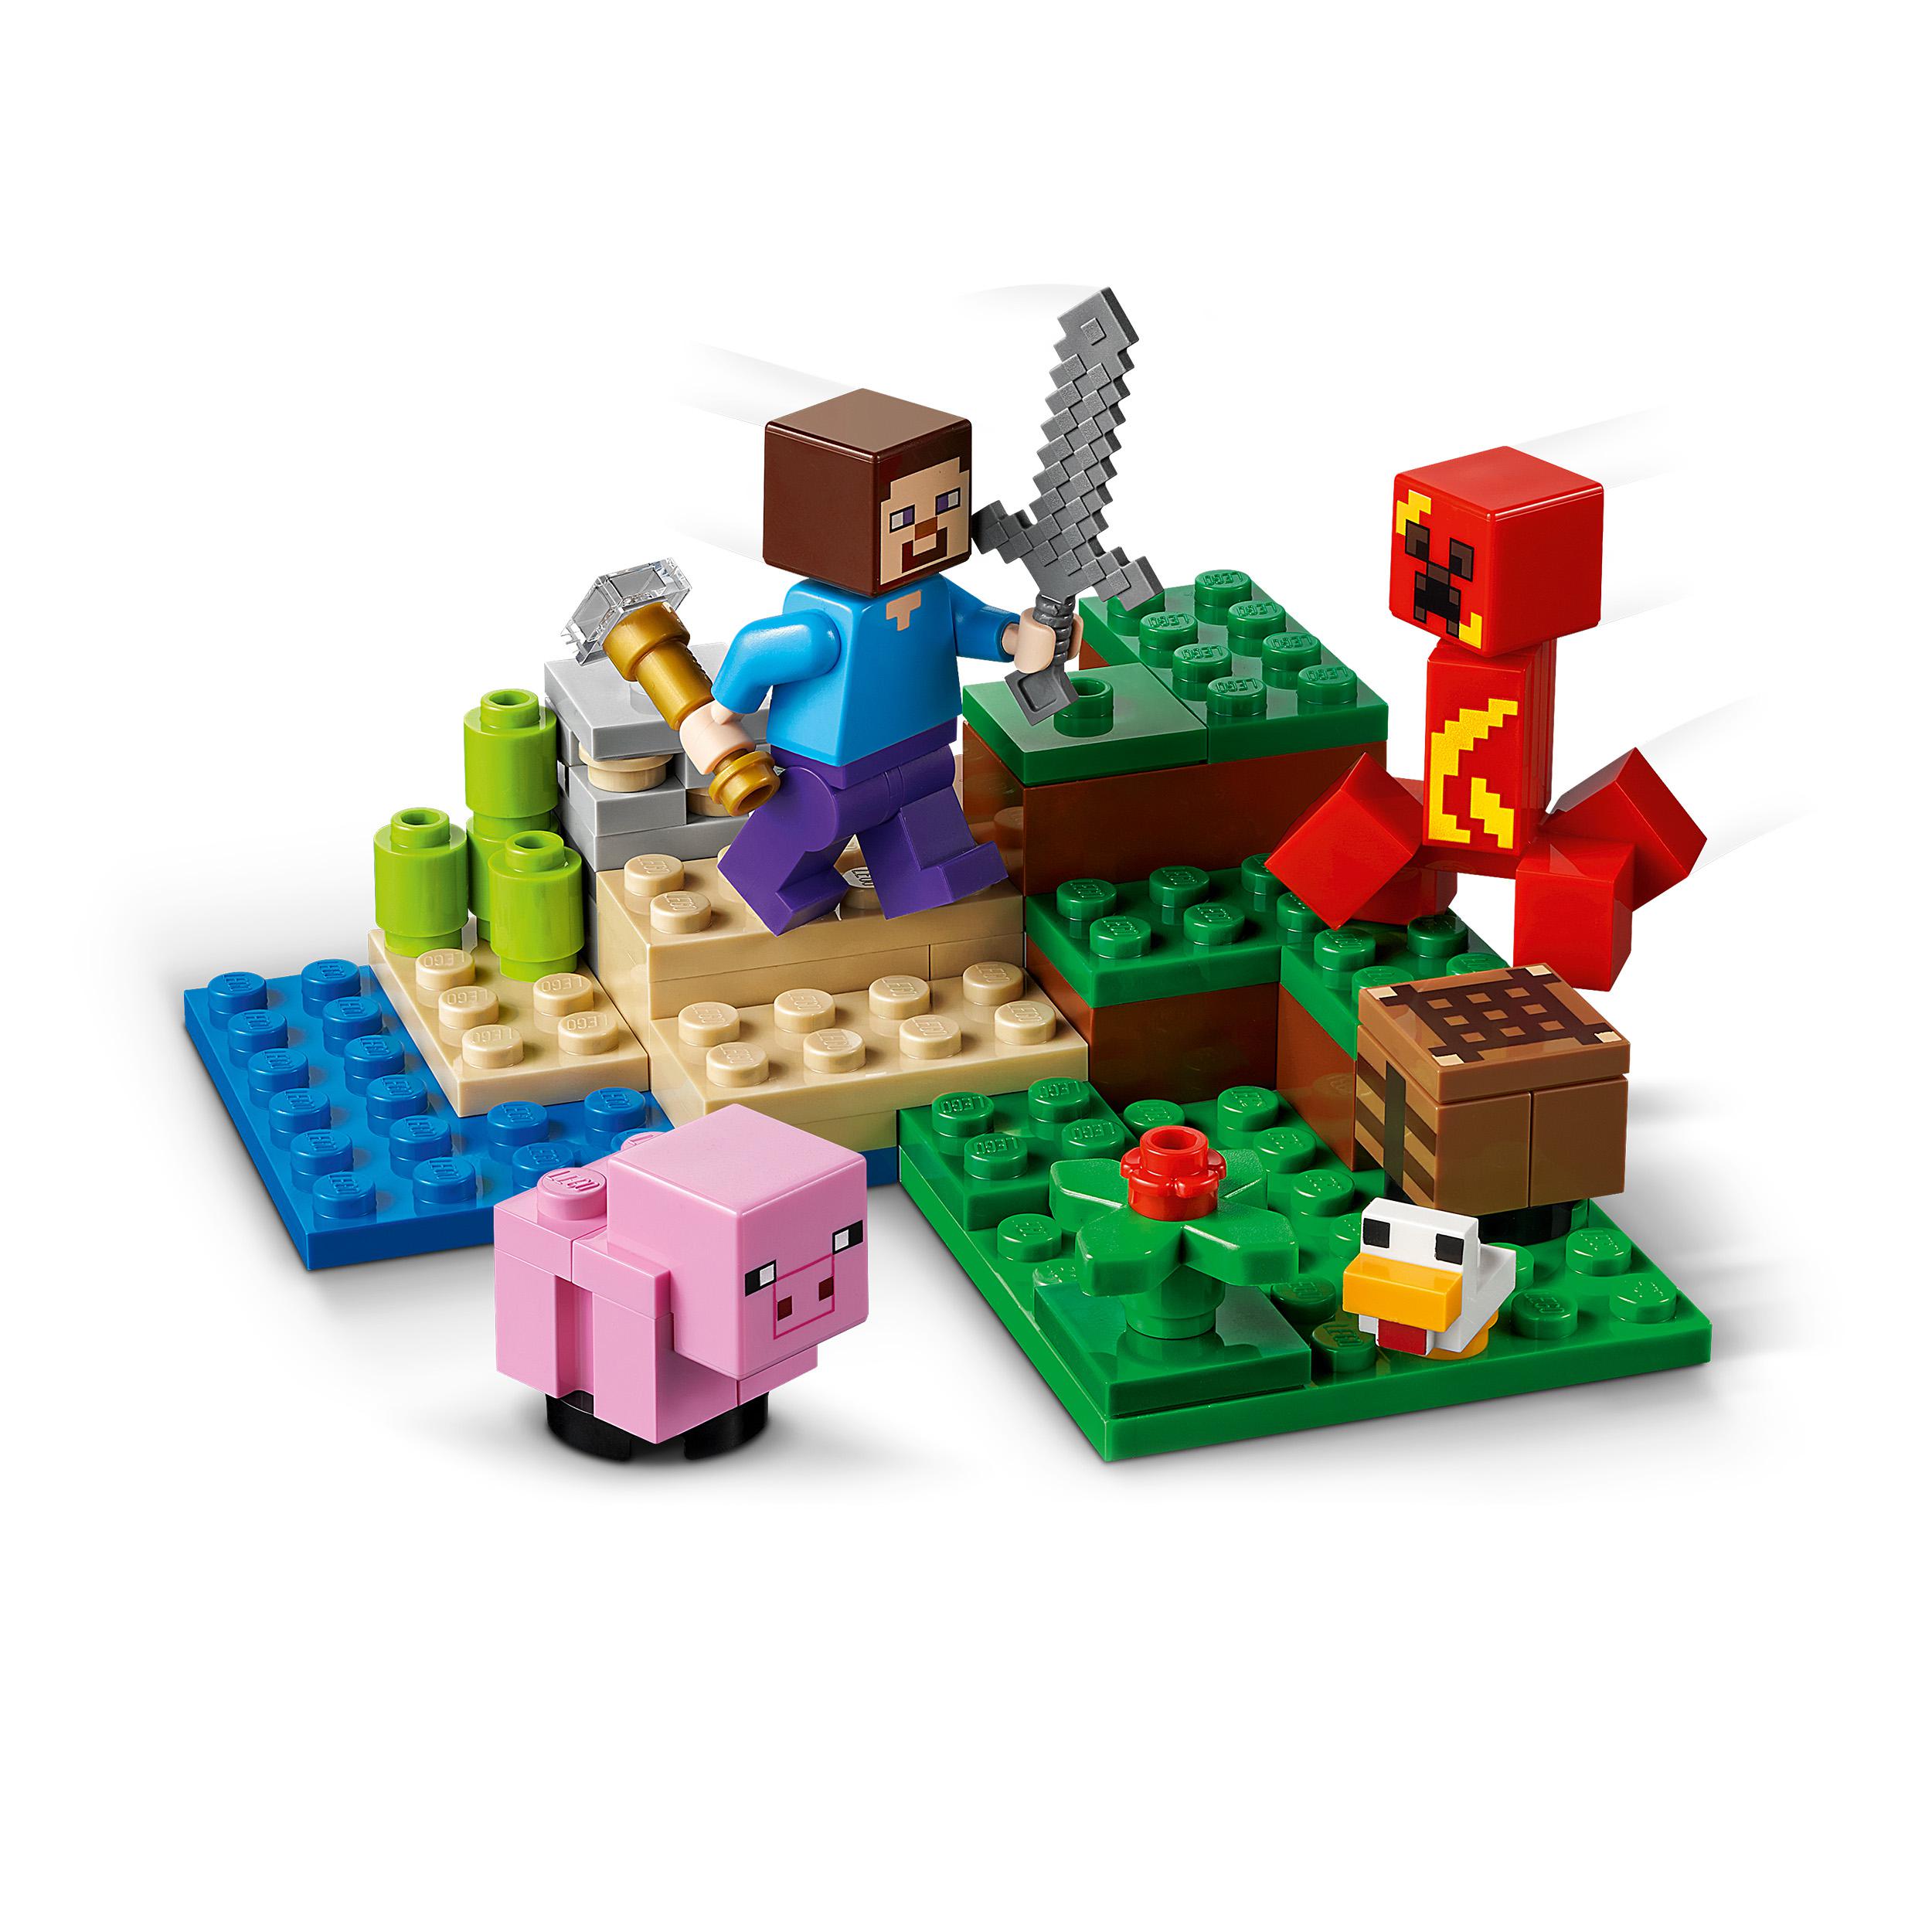 LEGO Minecraft L'agguato del Creeper, Mattoncini da Costruzione con Steve e 2 M 21177, , large